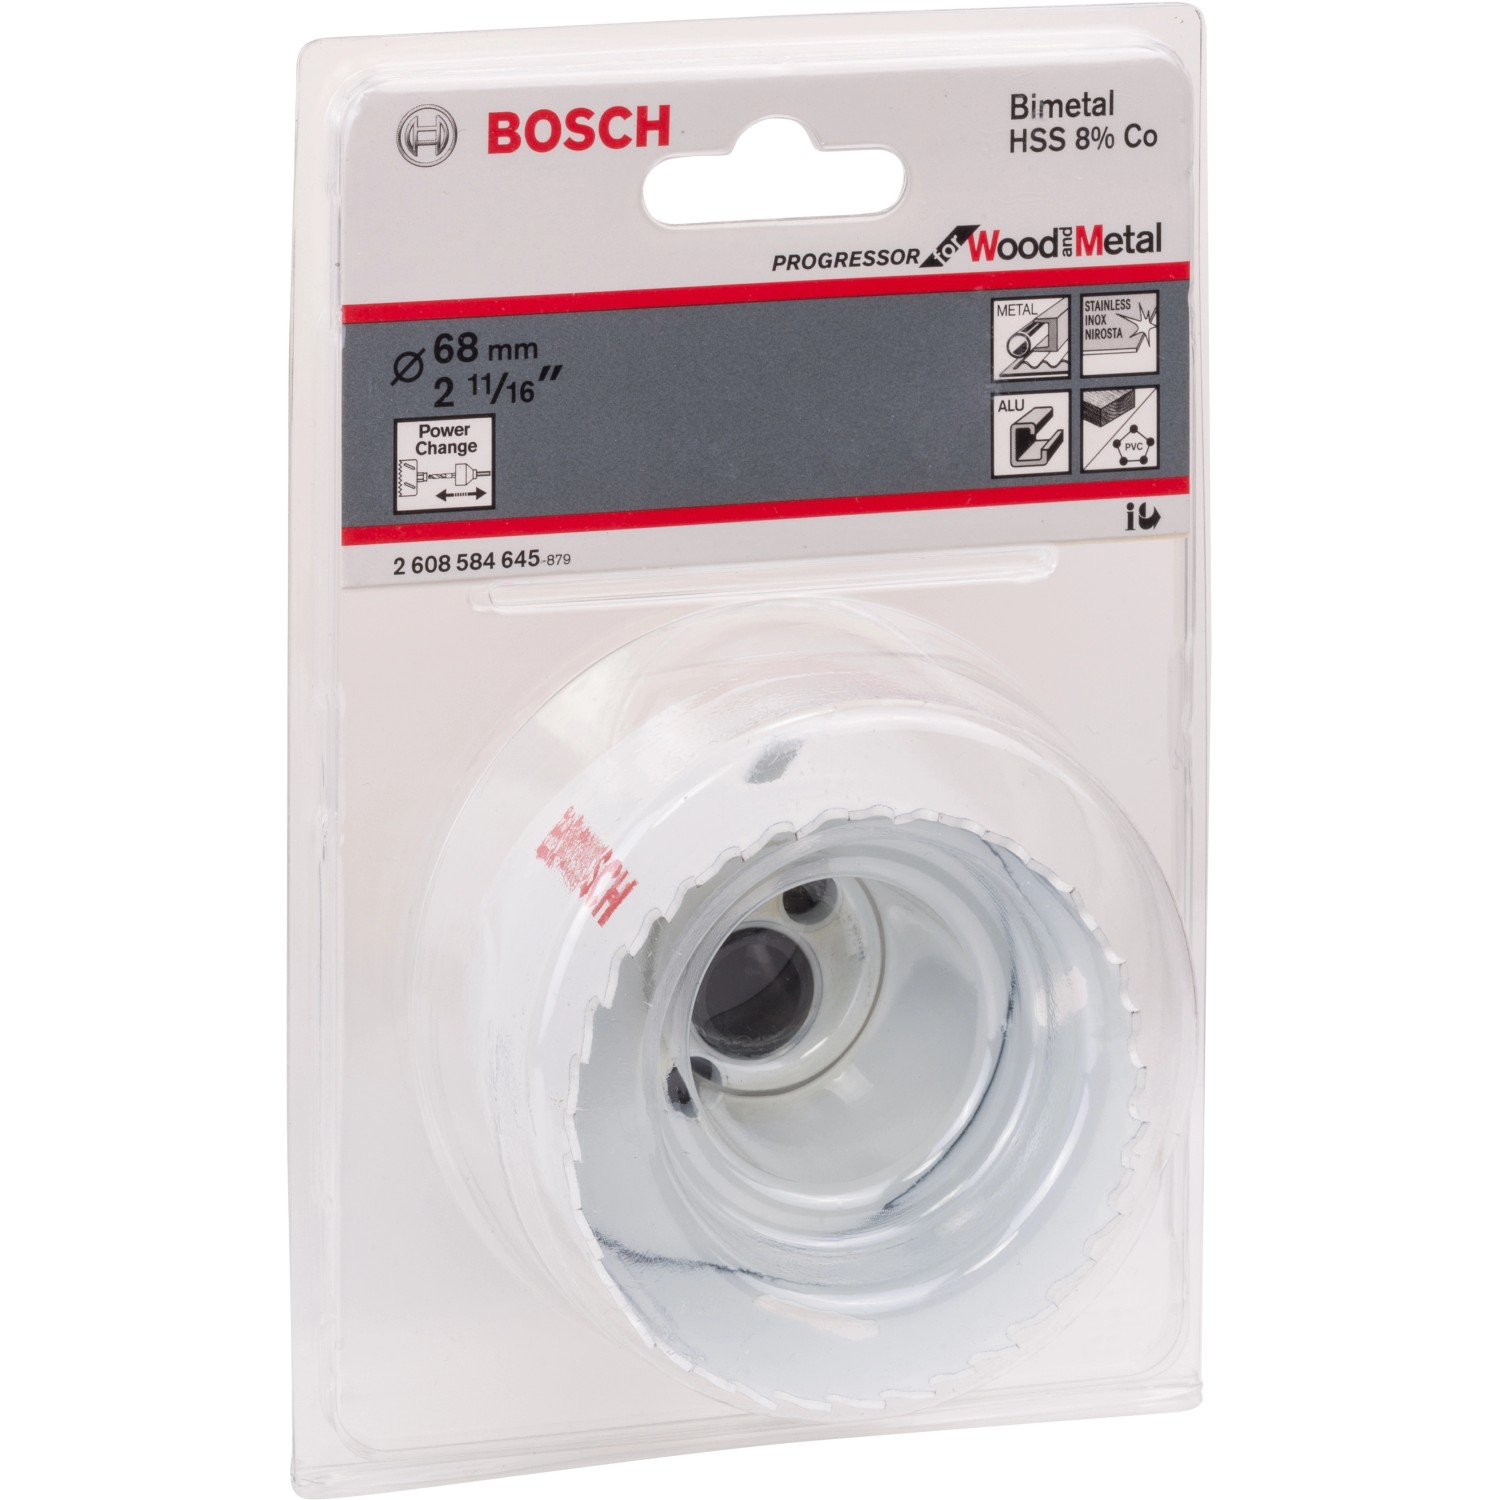 Bosch Lochsäge Pro Progressor 68 mm for Metal bei and kaufen Ø Wood OBI